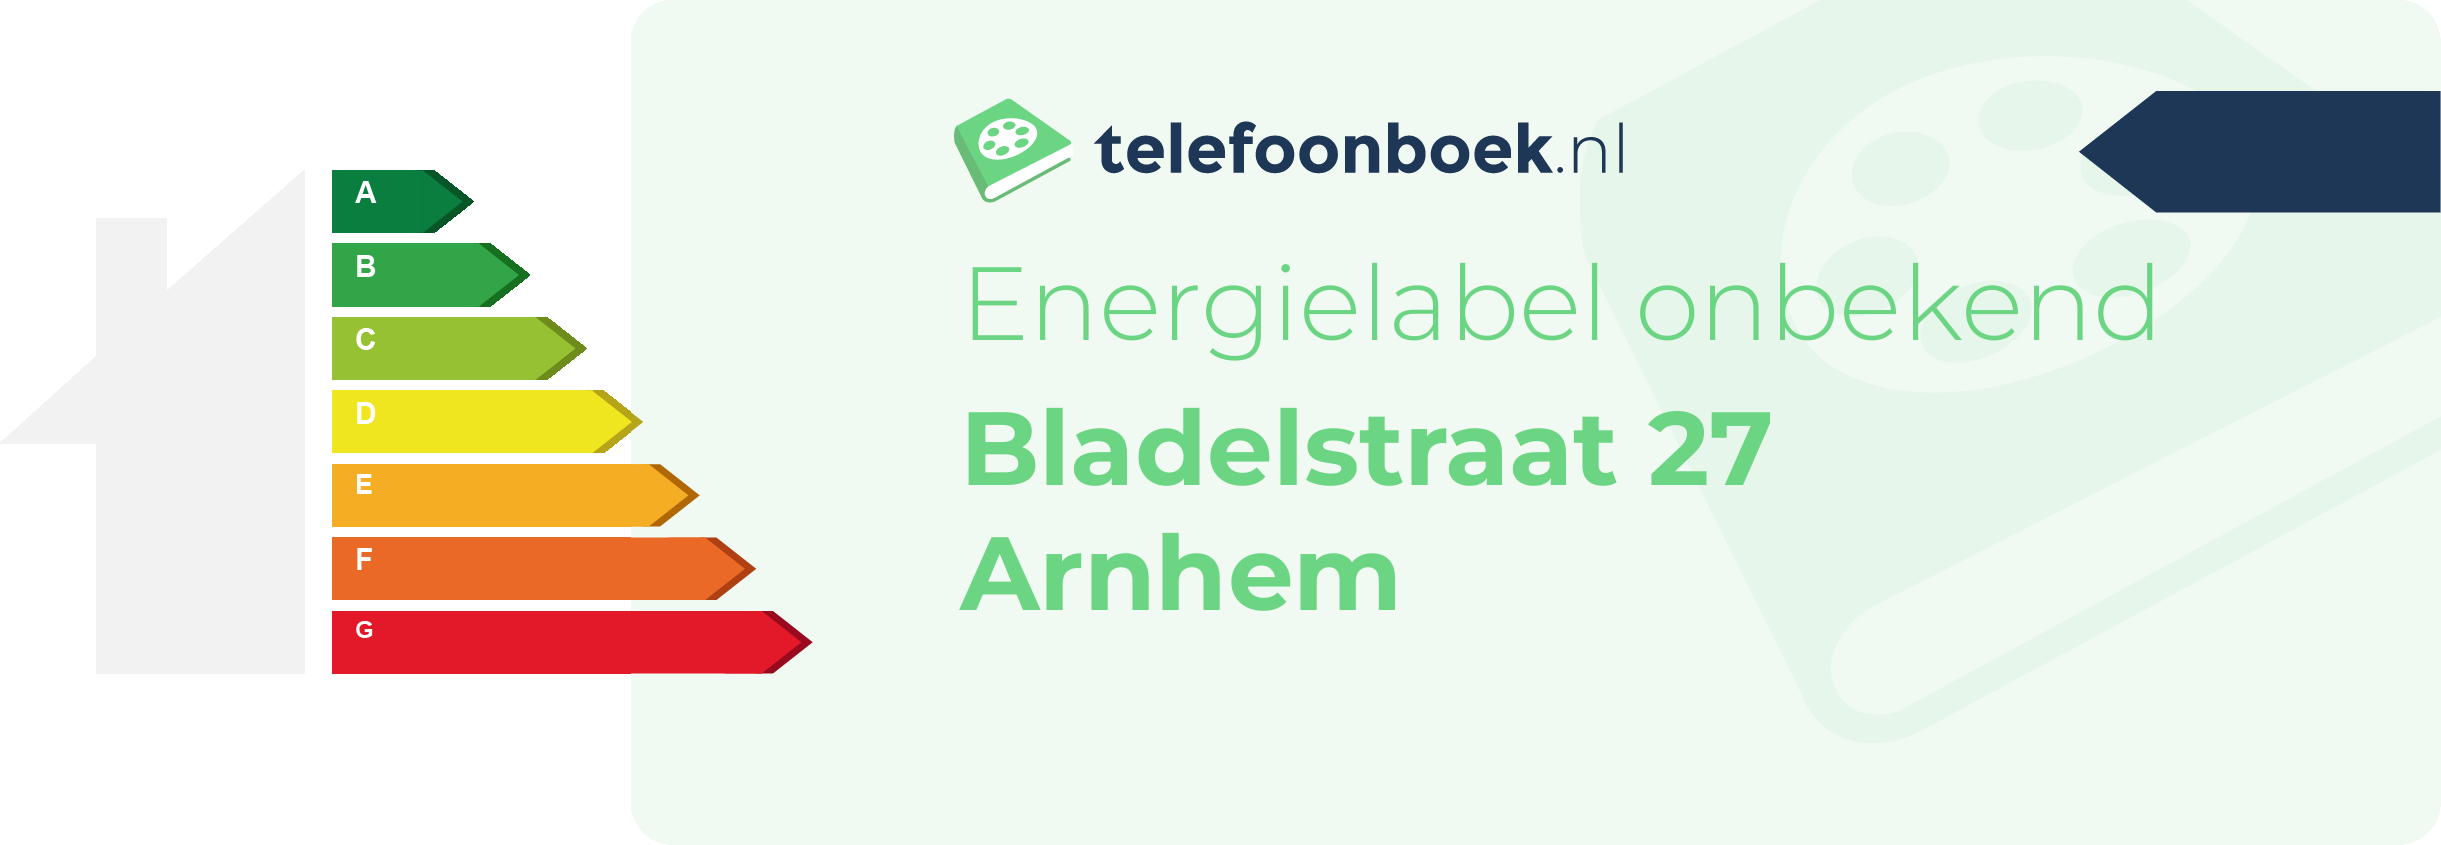 Energielabel Bladelstraat 27 Arnhem